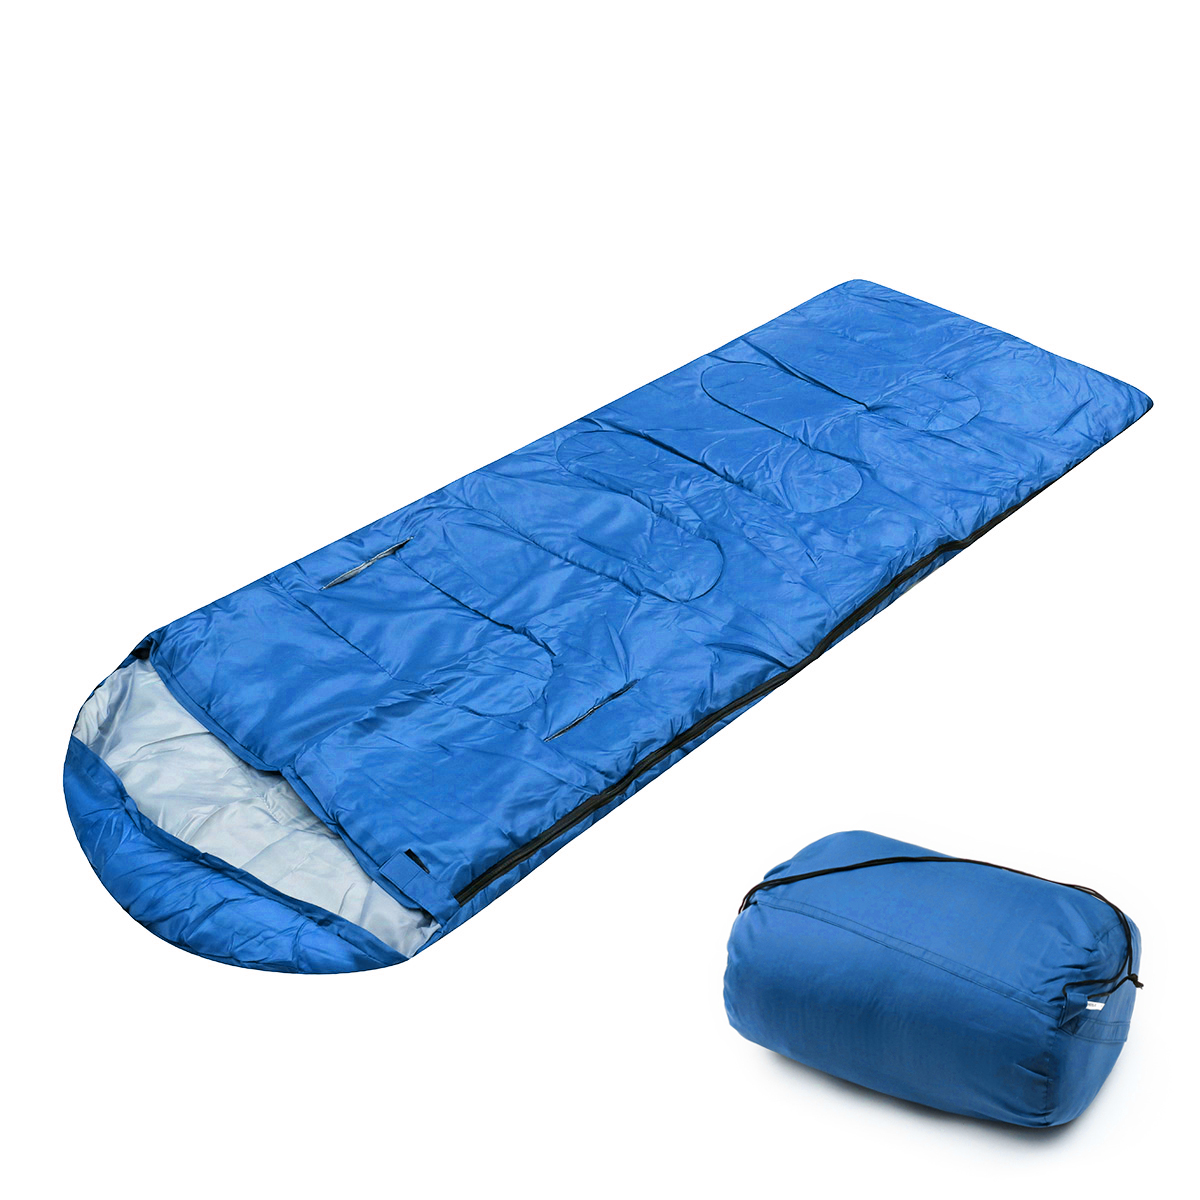 10x75CM-Waterproof-Camping-Envelope-Sleeping-Bag-Outdoor-Hiking-Backpacking-Sleeping-Bag-with-Compre-1647670-10